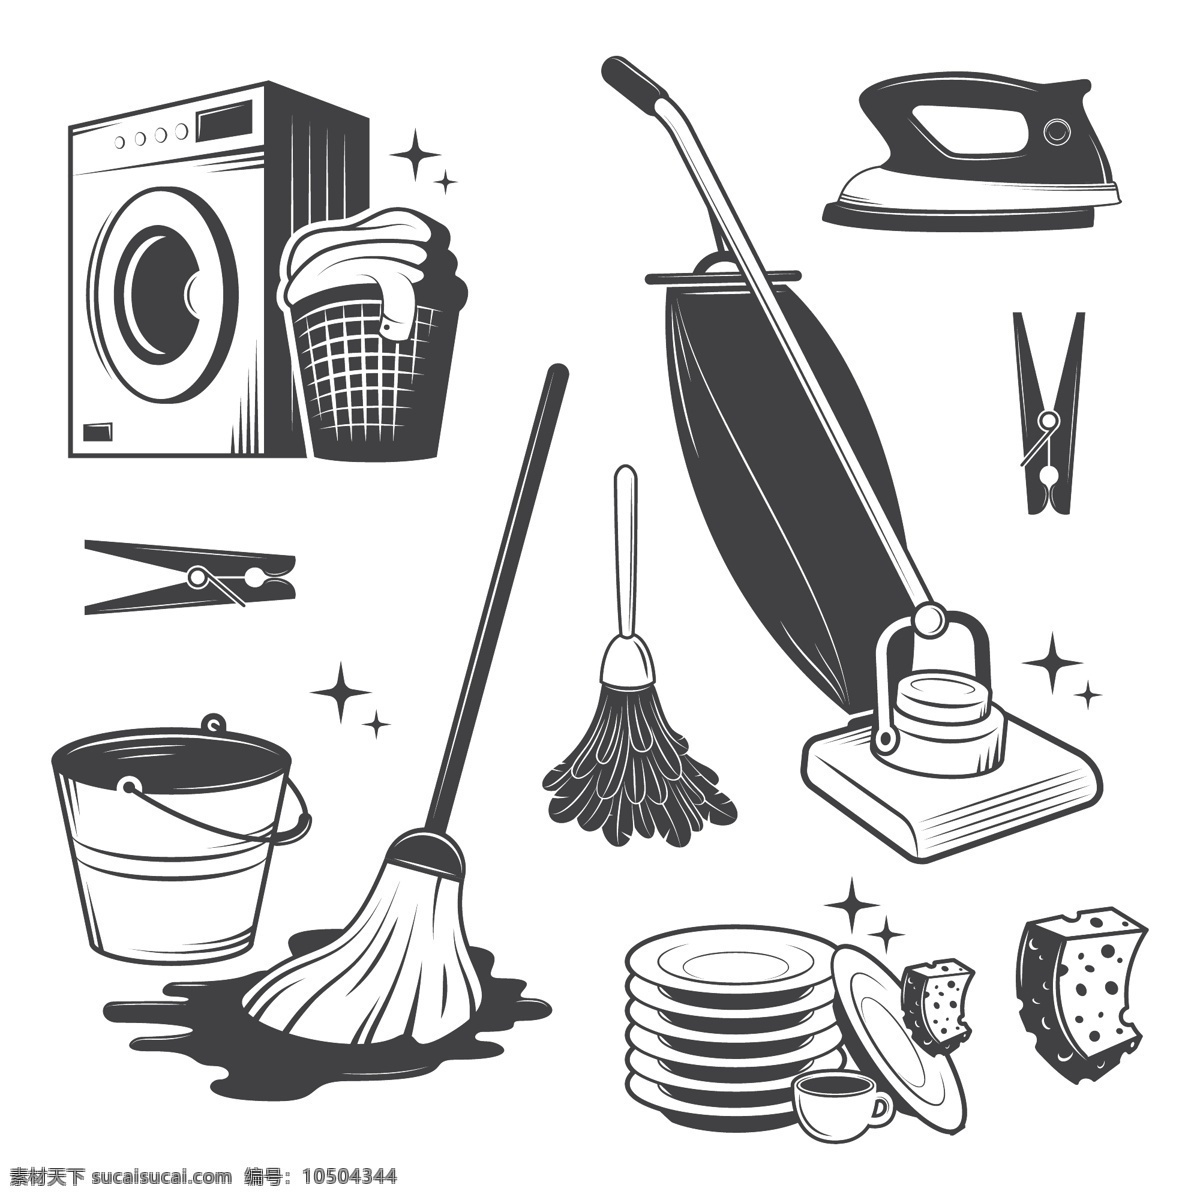 日常 生活 清洁用品 插画 静物 洗衣机 吸尘器 拖布 扫把 元素